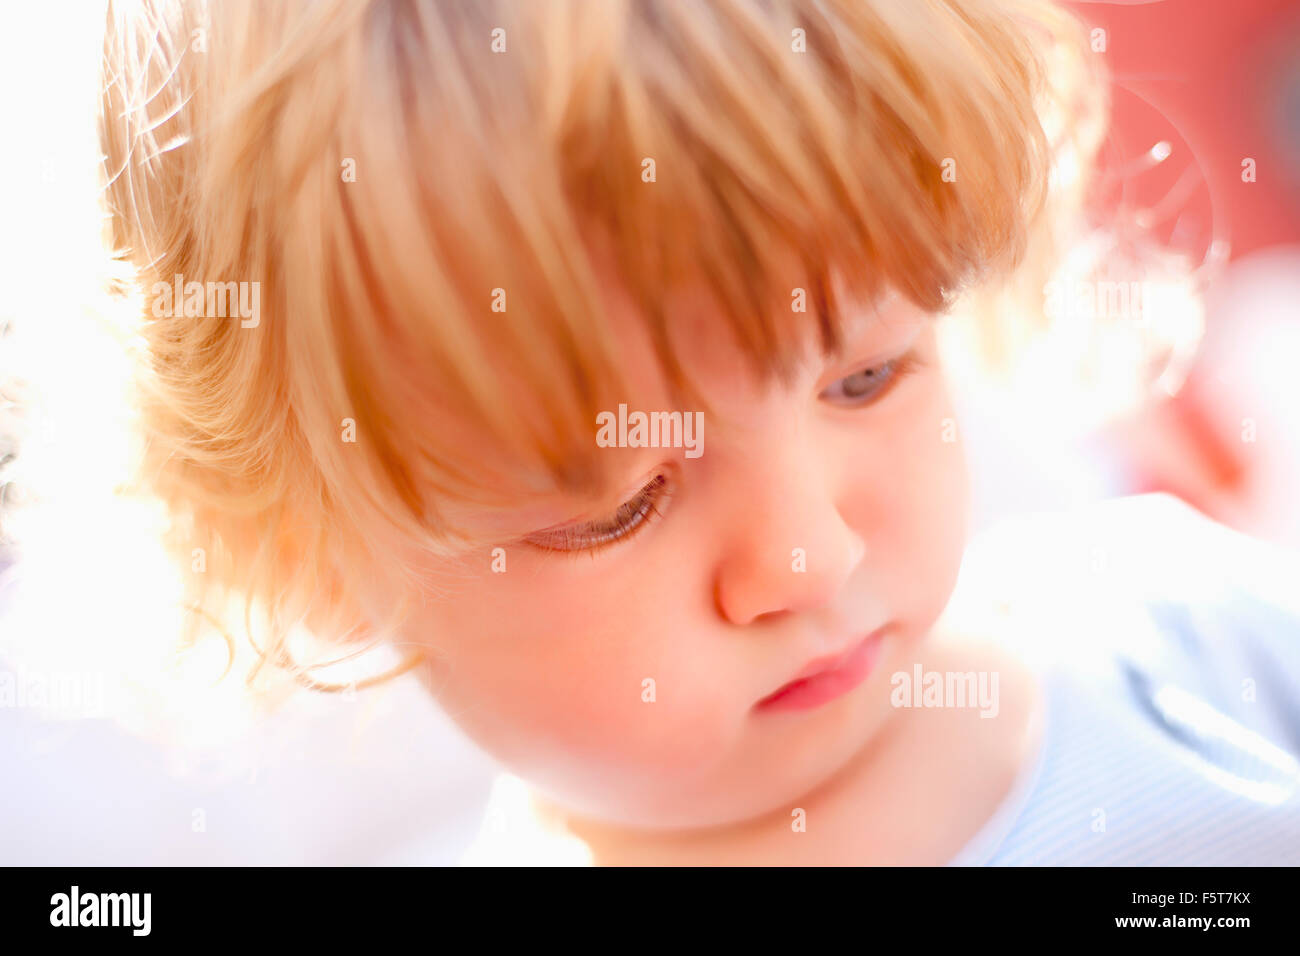 Ritratto di un ragazzino con capelli biondi cercando Foto Stock